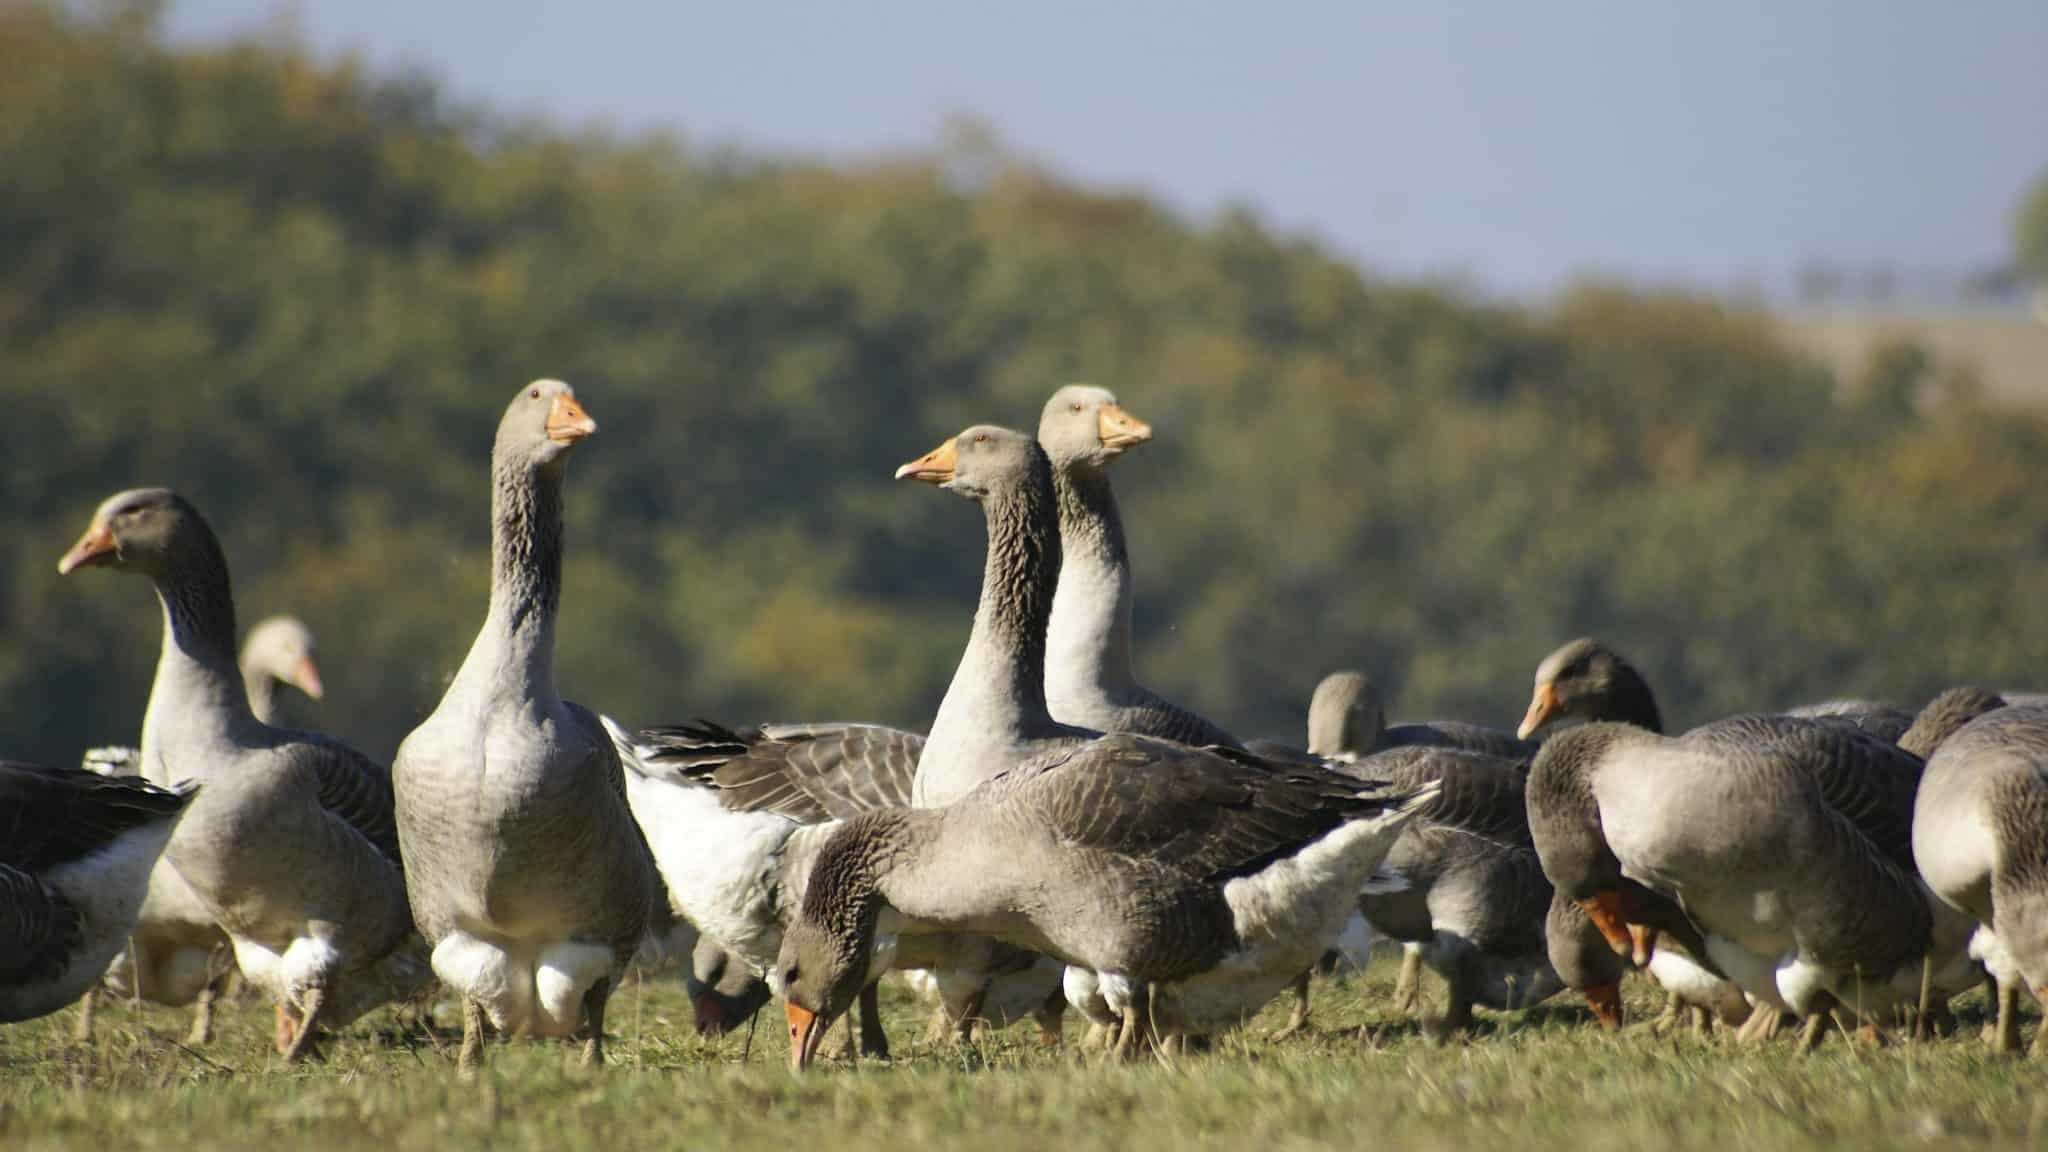 Bientôt un foie gras d'oie sans gavage et bio en Alsace - France Bleu